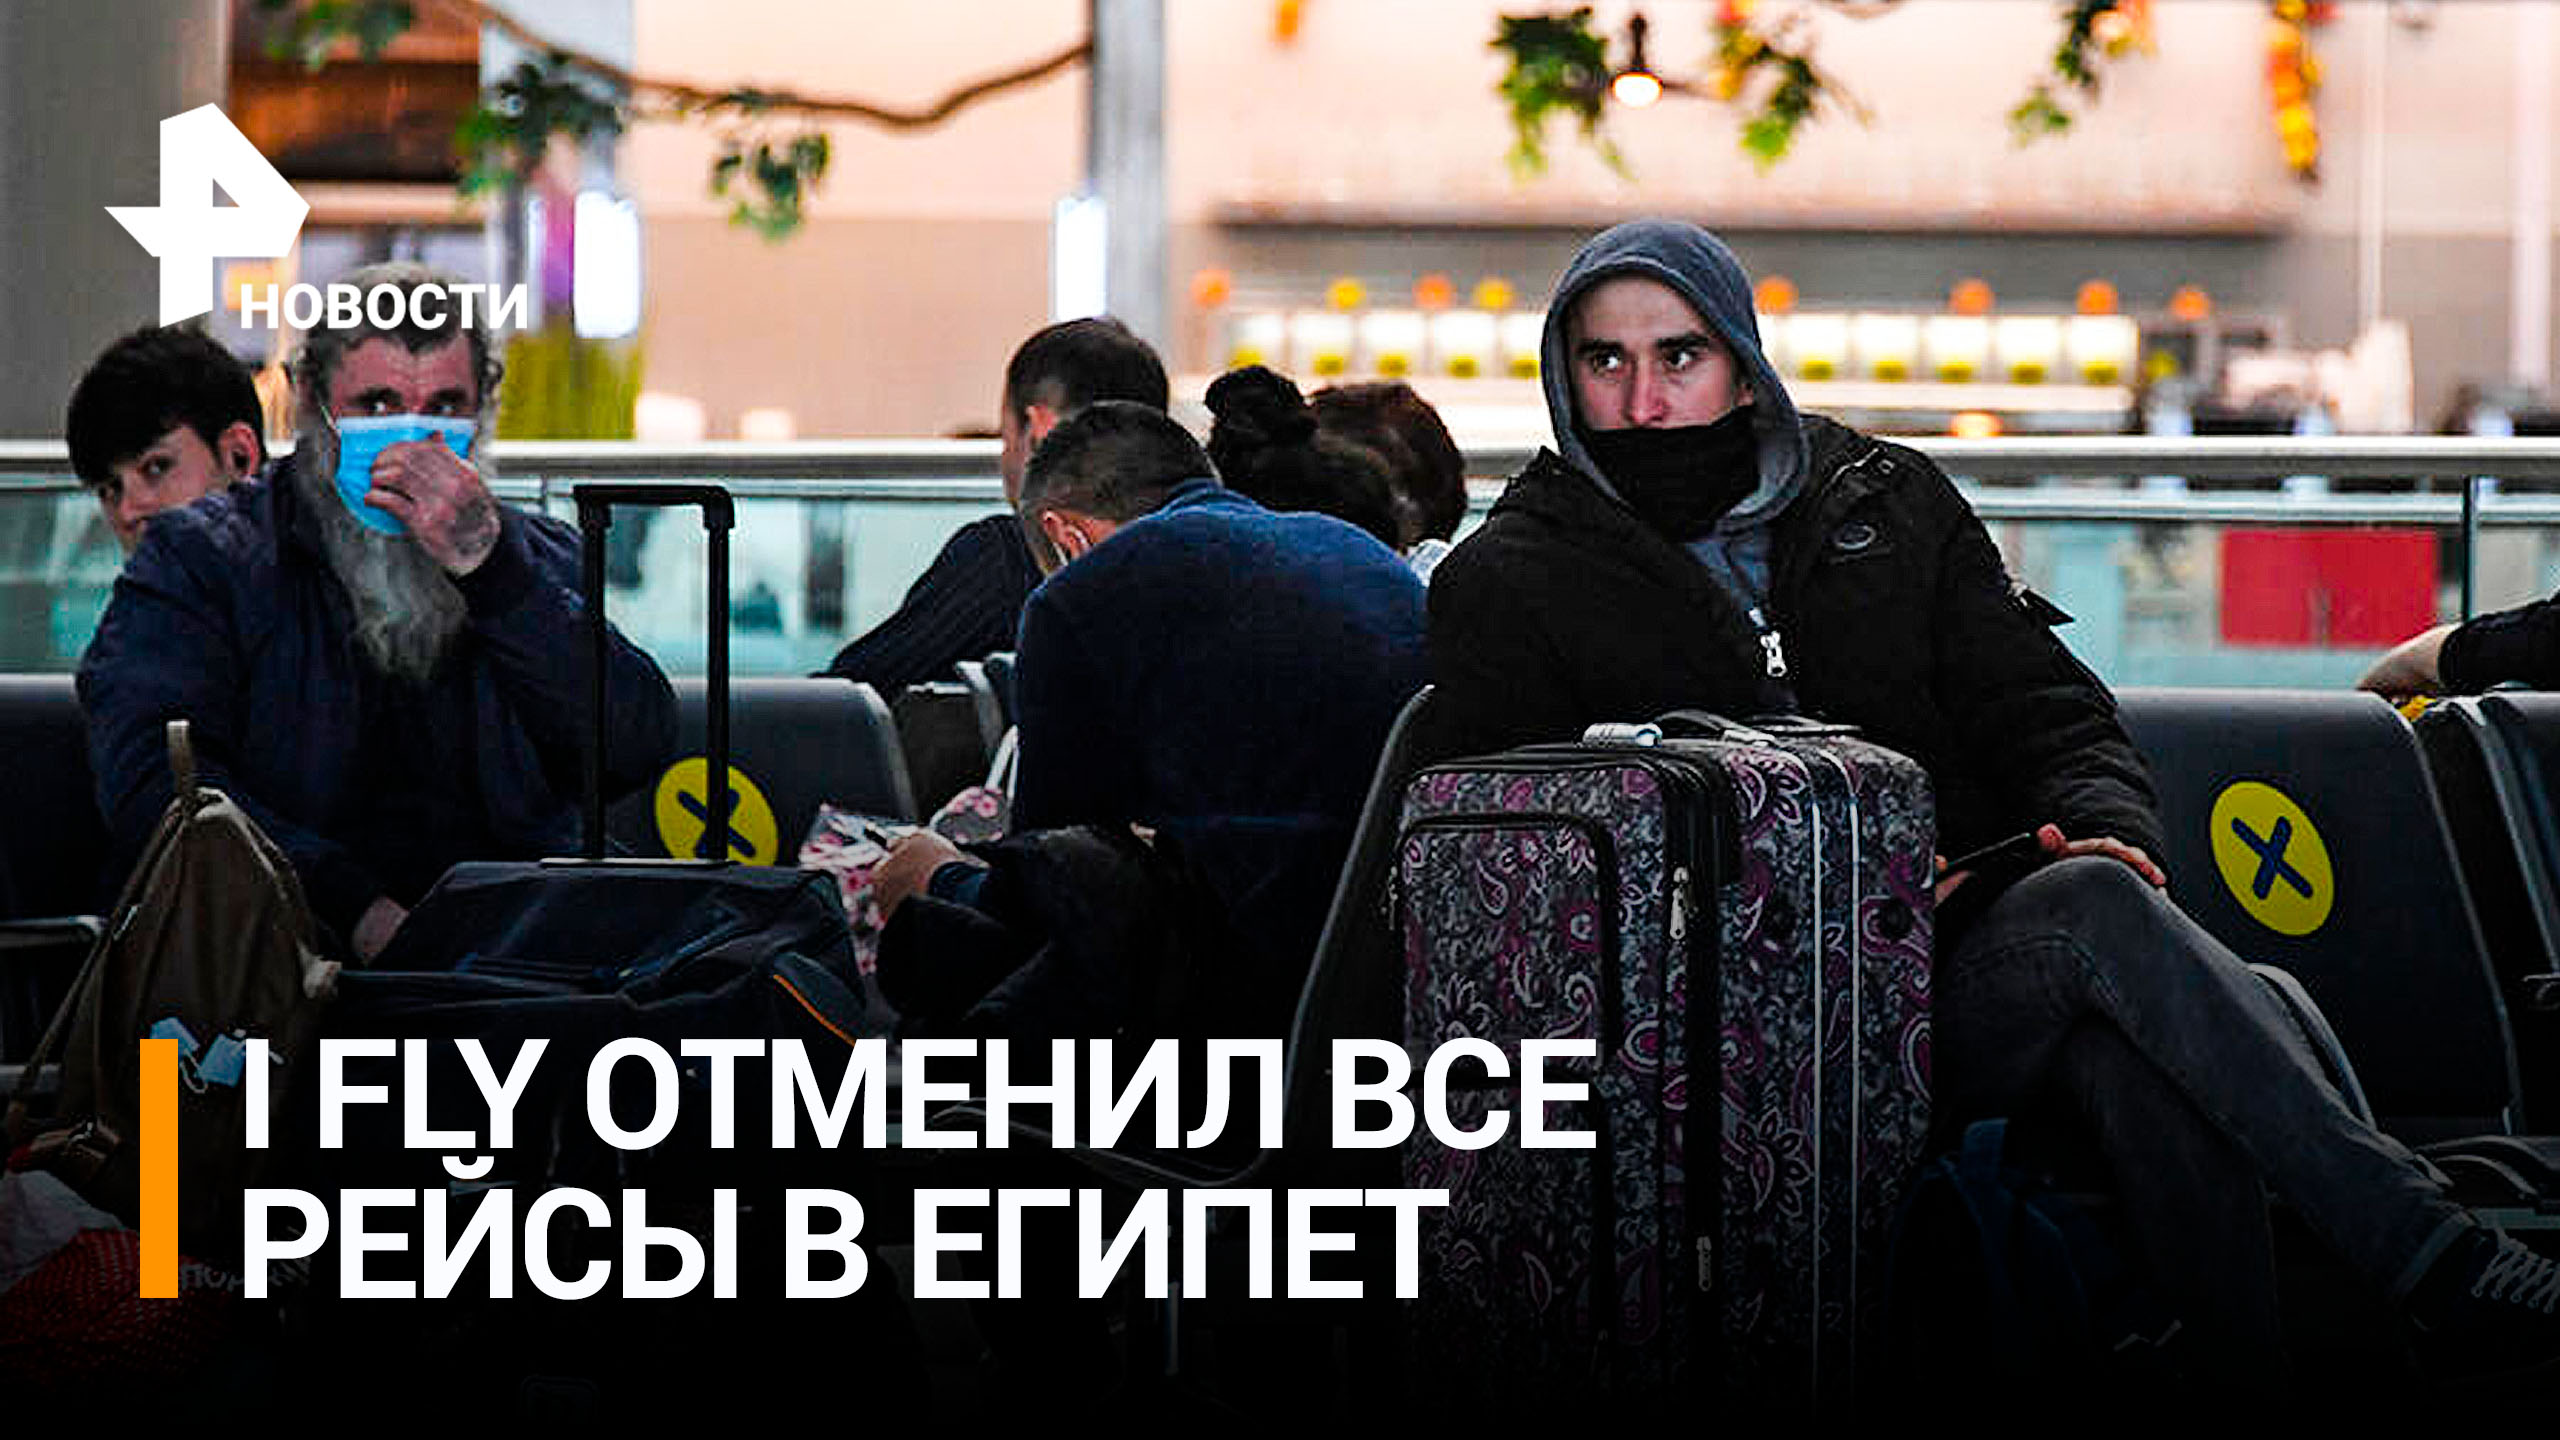 После ситуации во Внуково I Fly отменила все рейсы в Египет / РЕН Новости